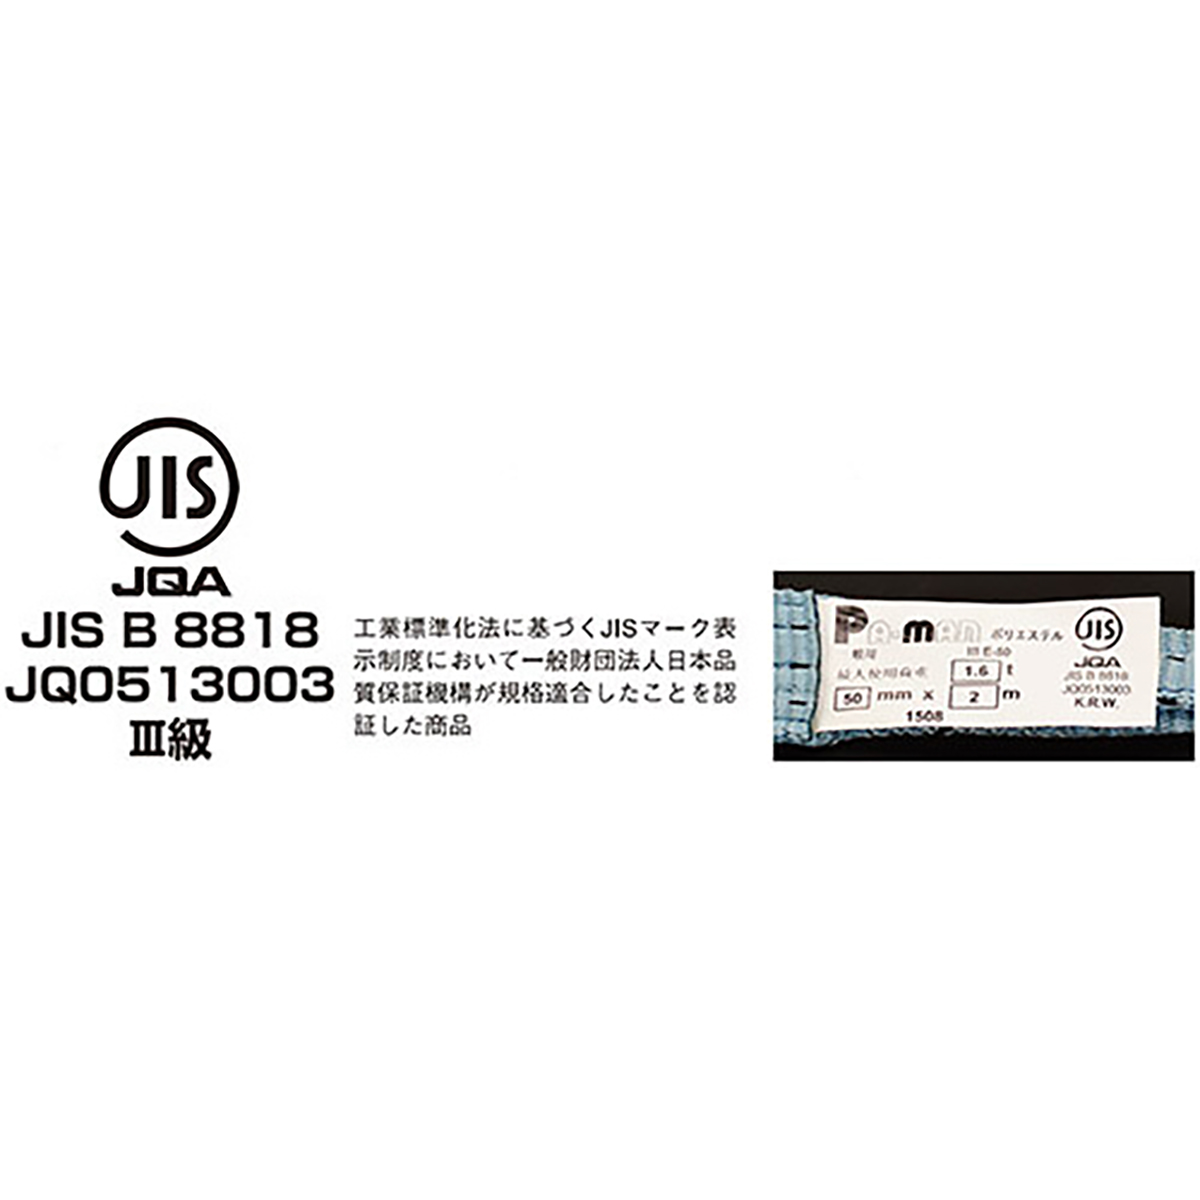 ポリベルトスリング JIS III級 ソフト面付 巾25mm 3m 1本